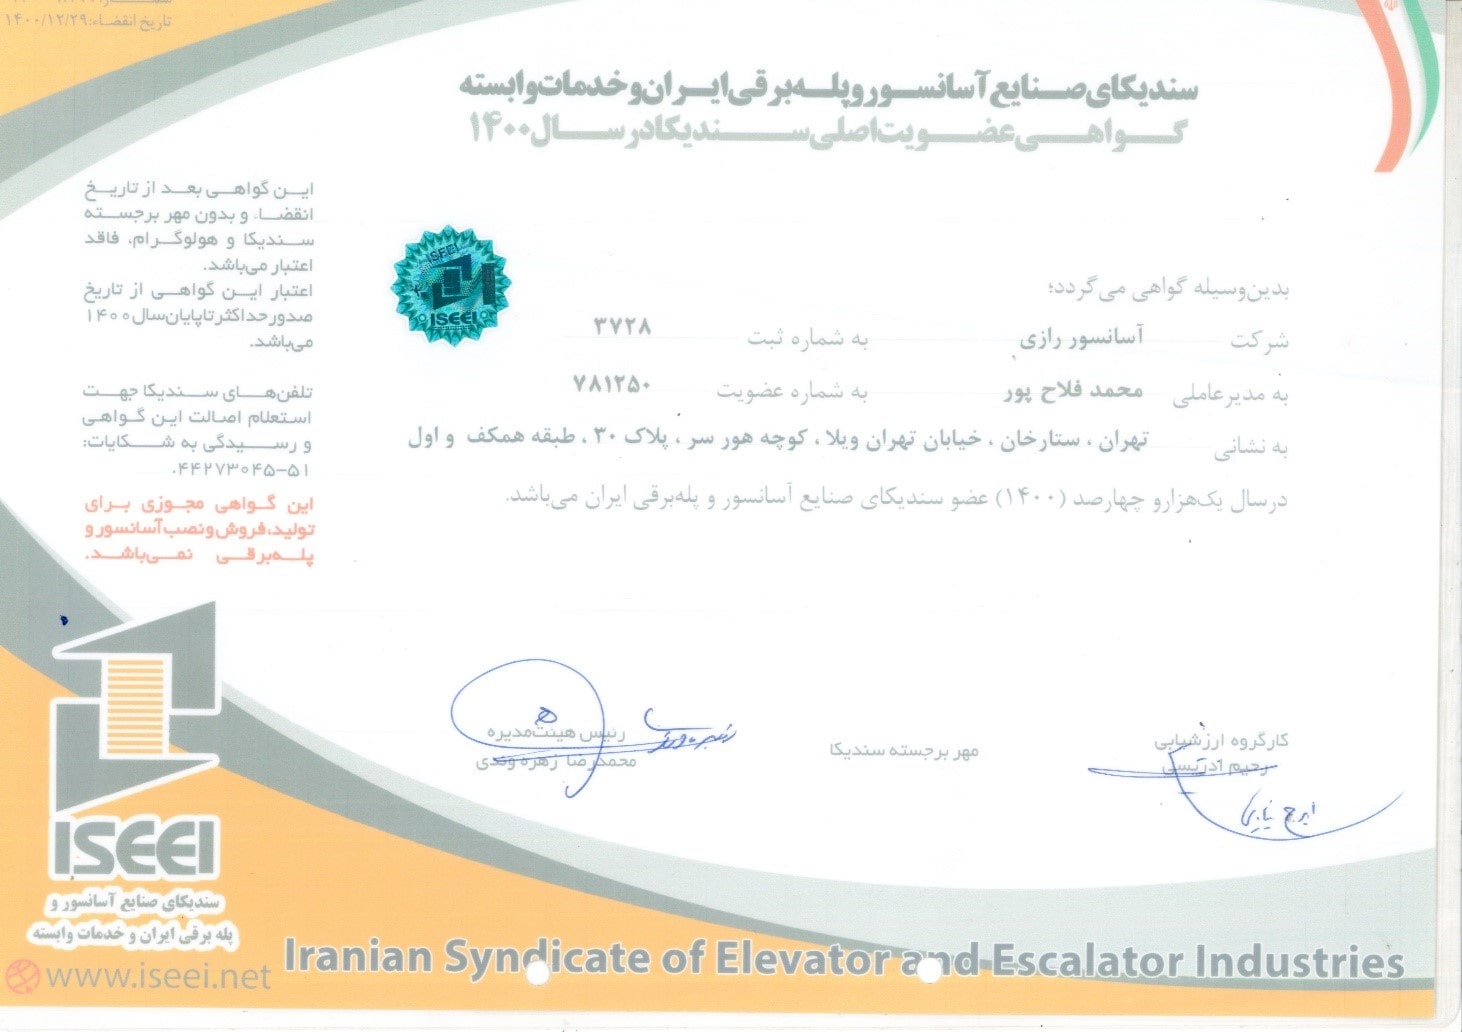 کسب گواهی عضویت اصلی سندیکای صنایع آسانسور و پله برقی ایران و خدمات وابسته در سال 1400 